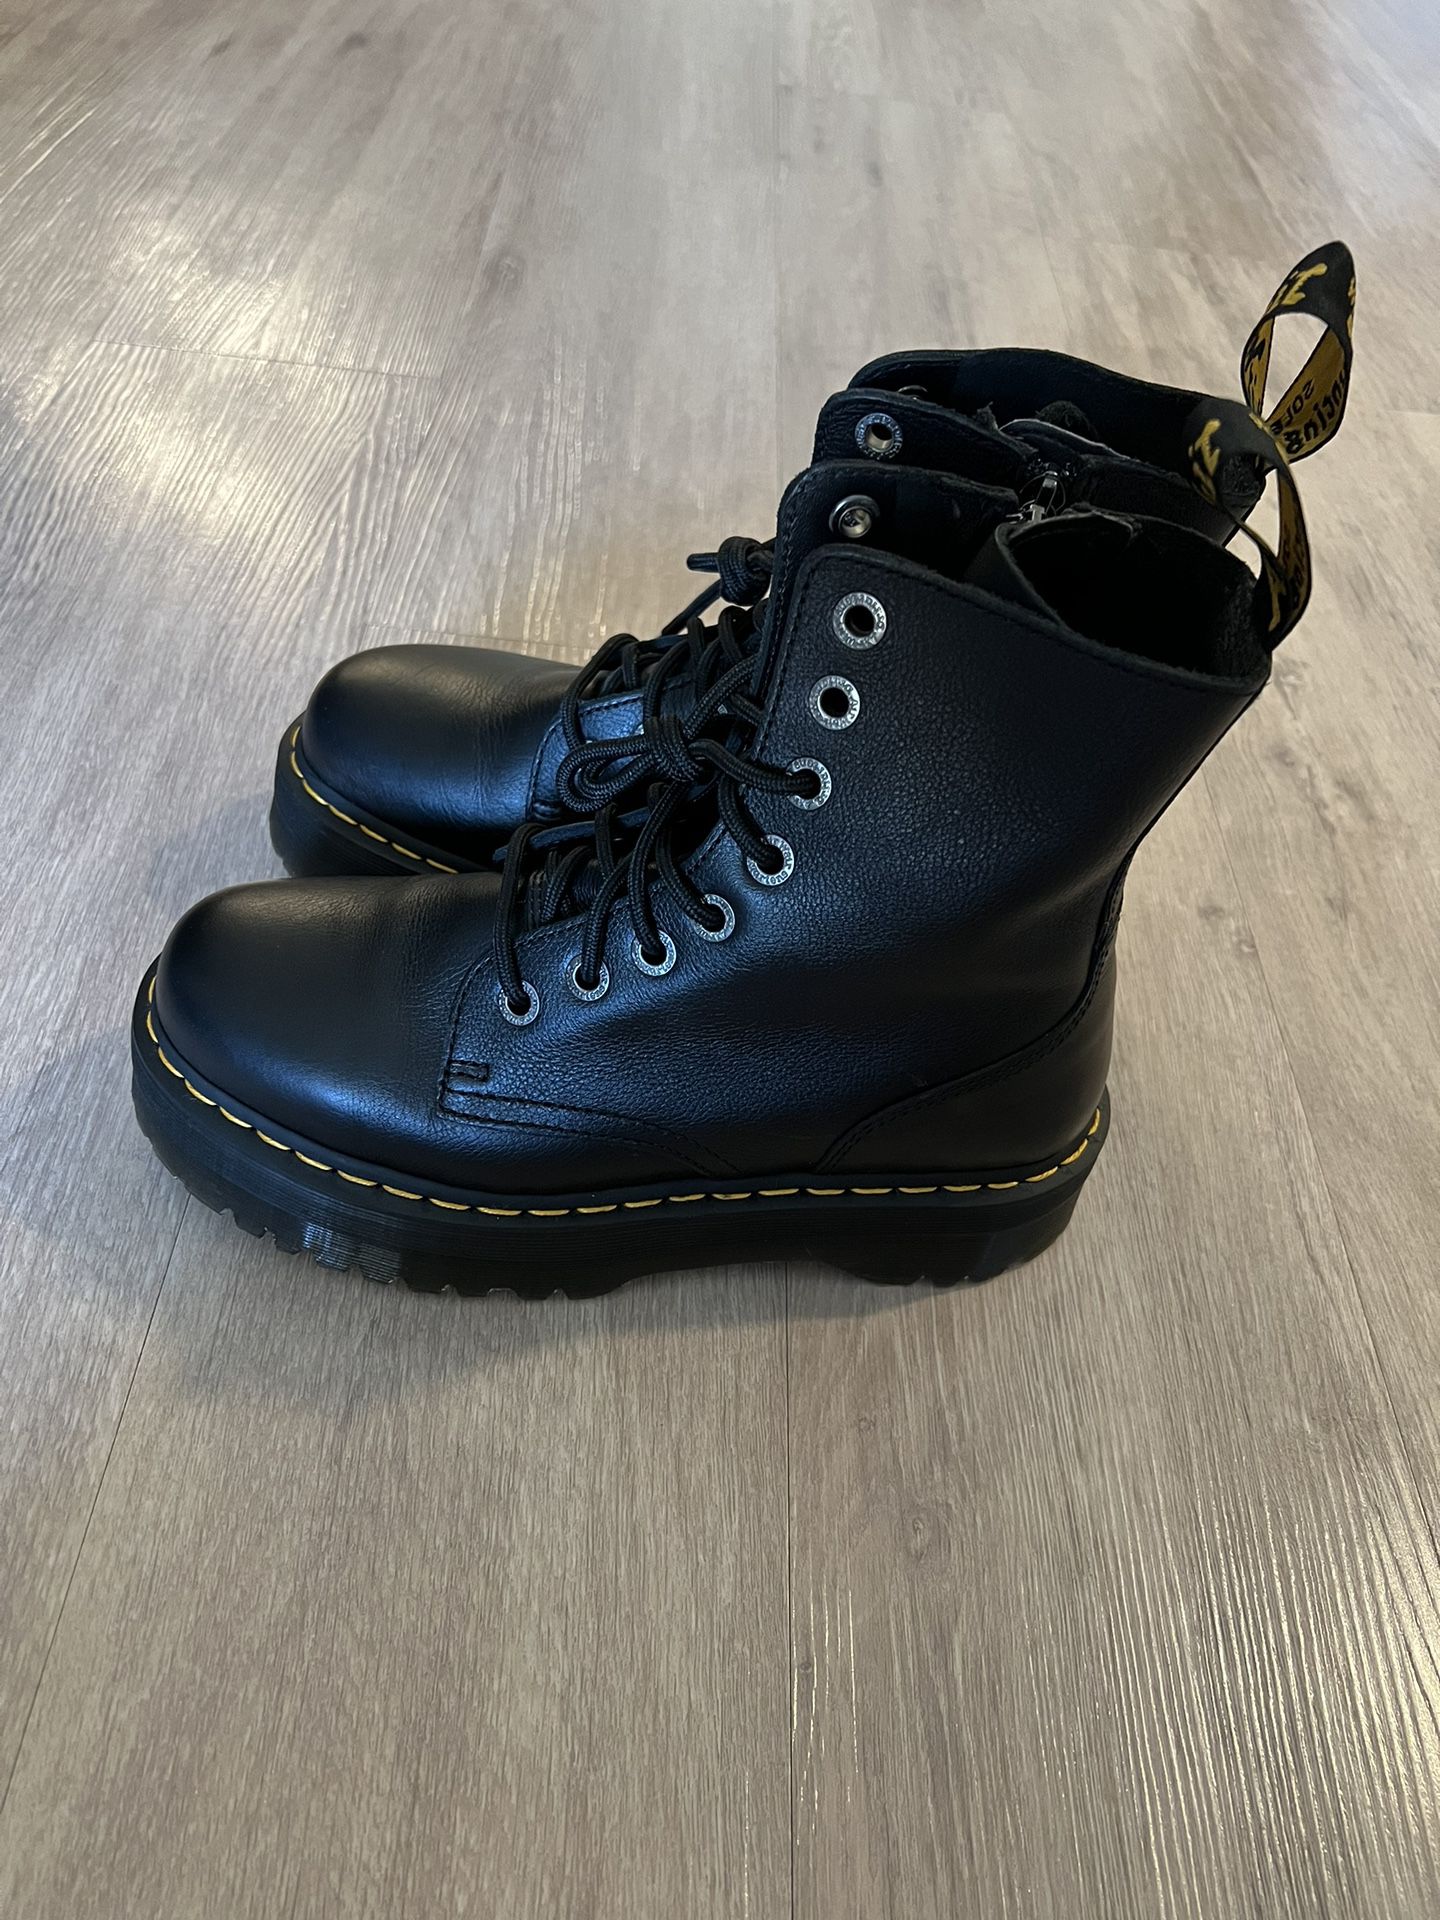 Dr. Martens Jaden Platform Boots Black Leather Sz 9 Doc Martens